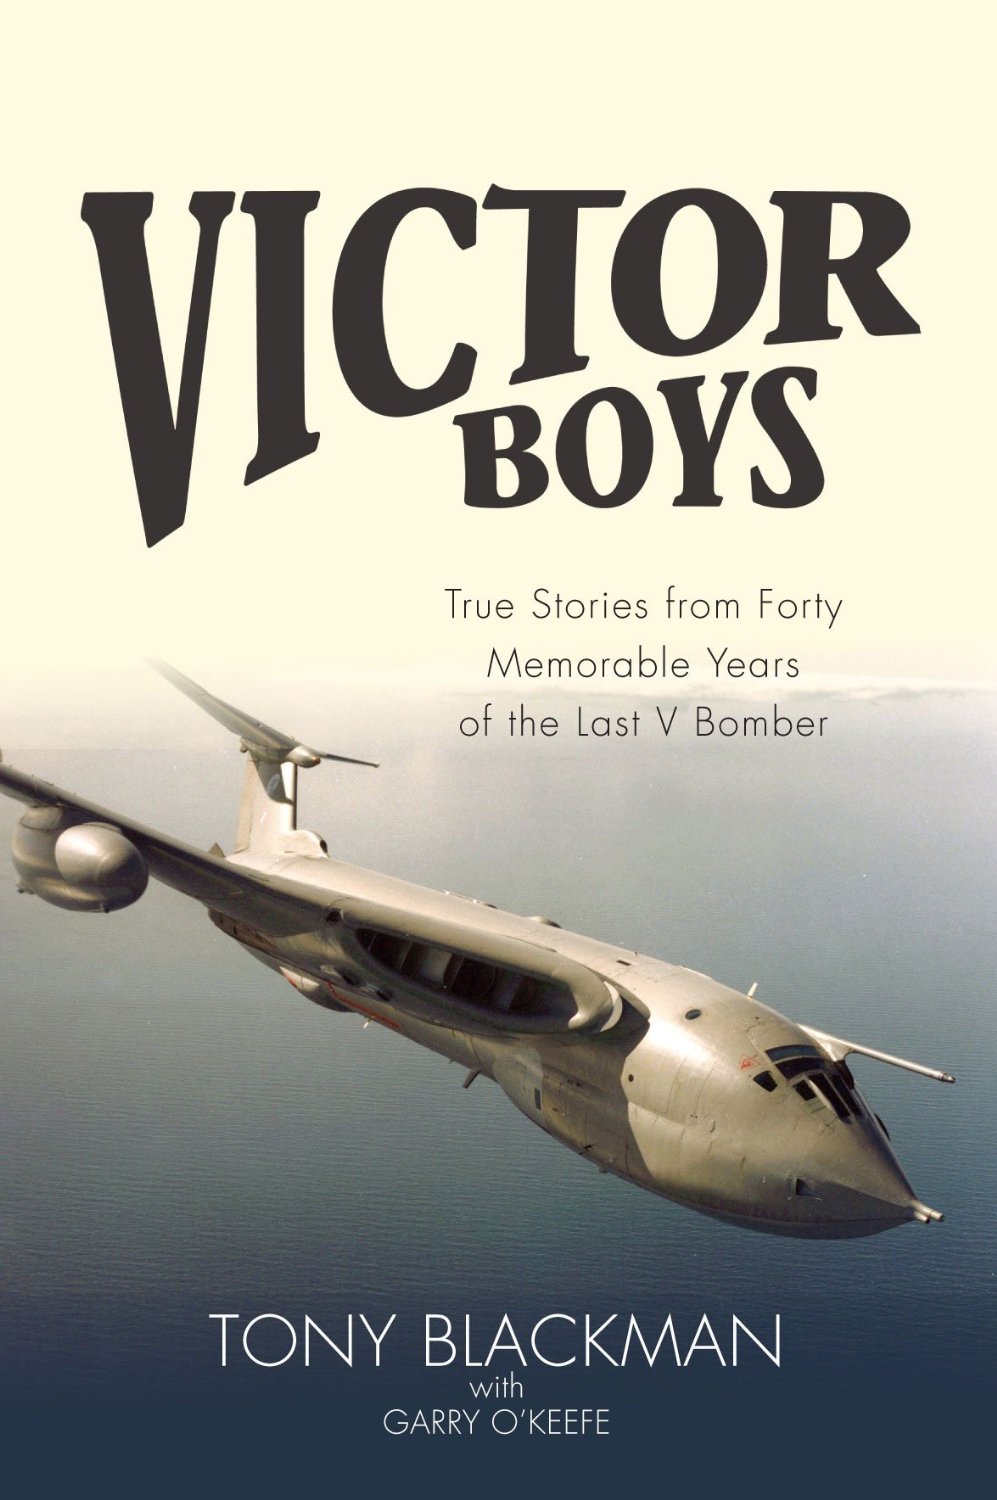 Victor Boys